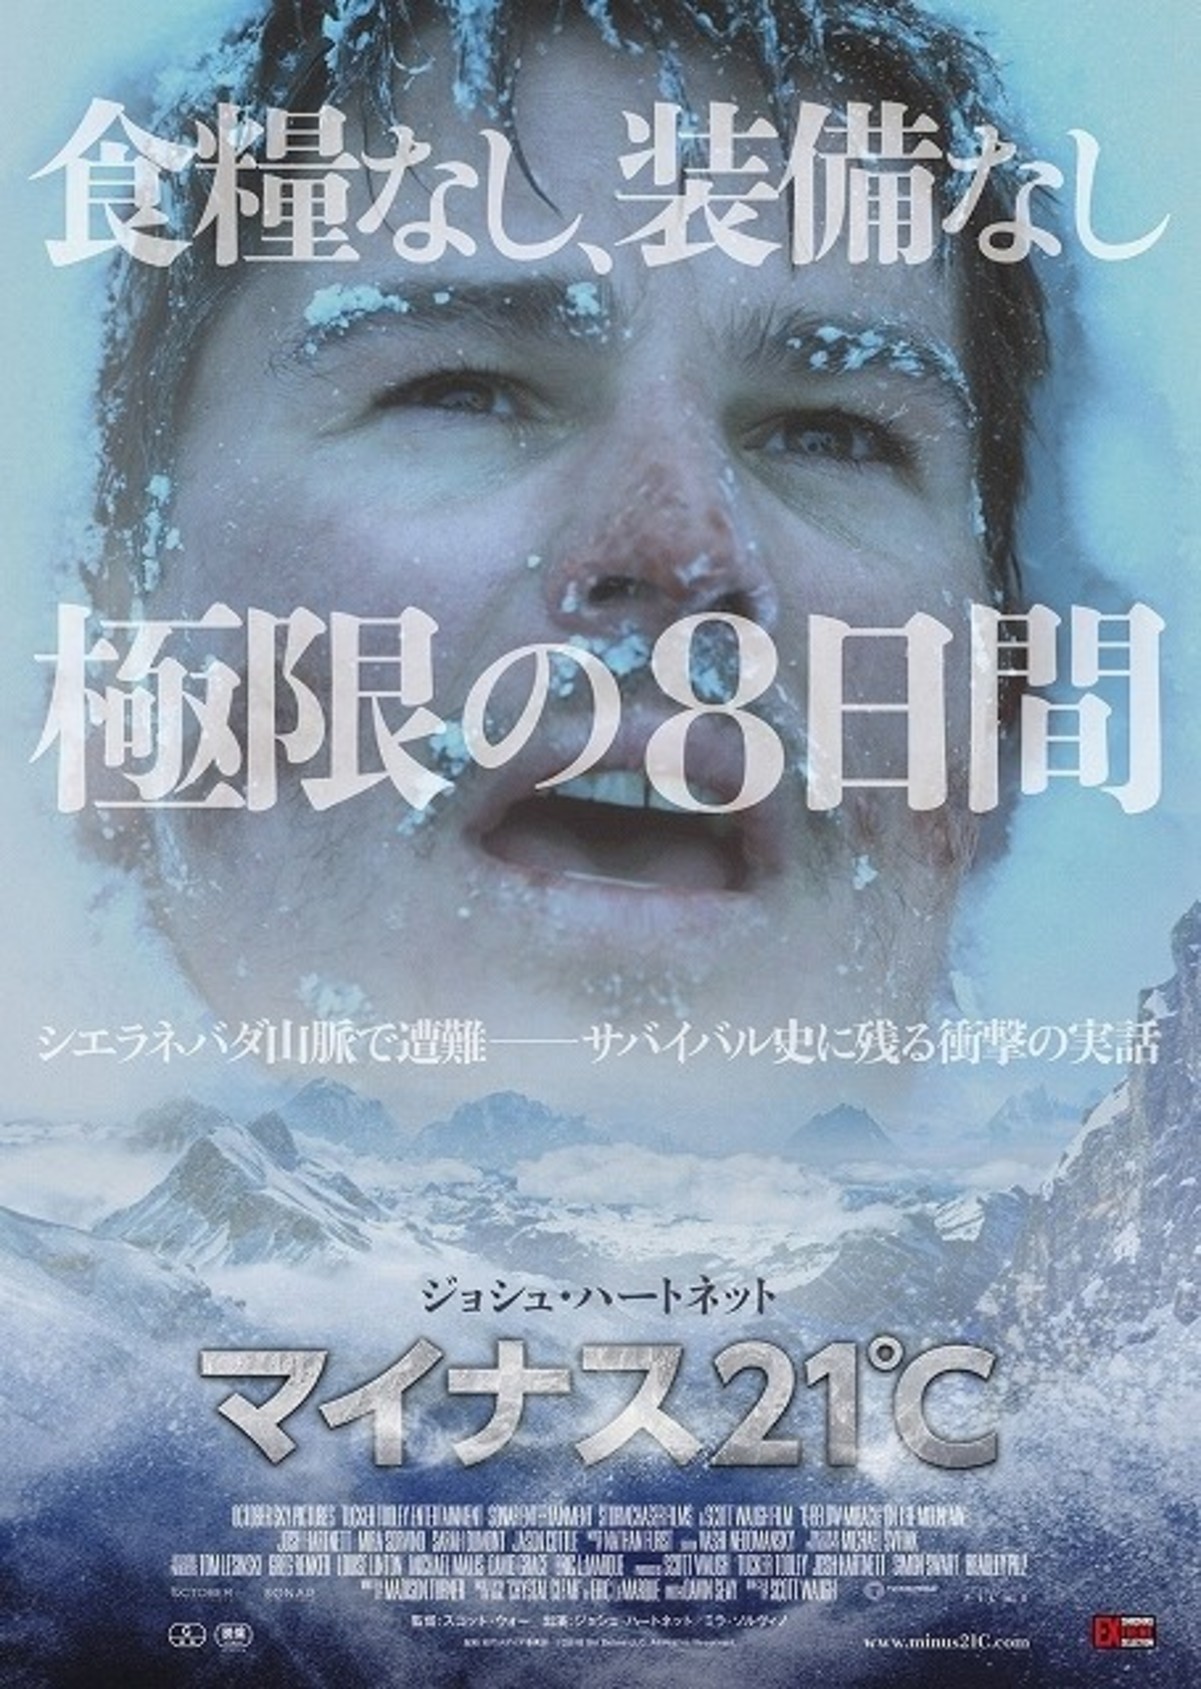 ジョシュ ハートネットが極寒の雪山で8日間サバイバル マイナス21 予告編披露 映画ニュース 映画 Com